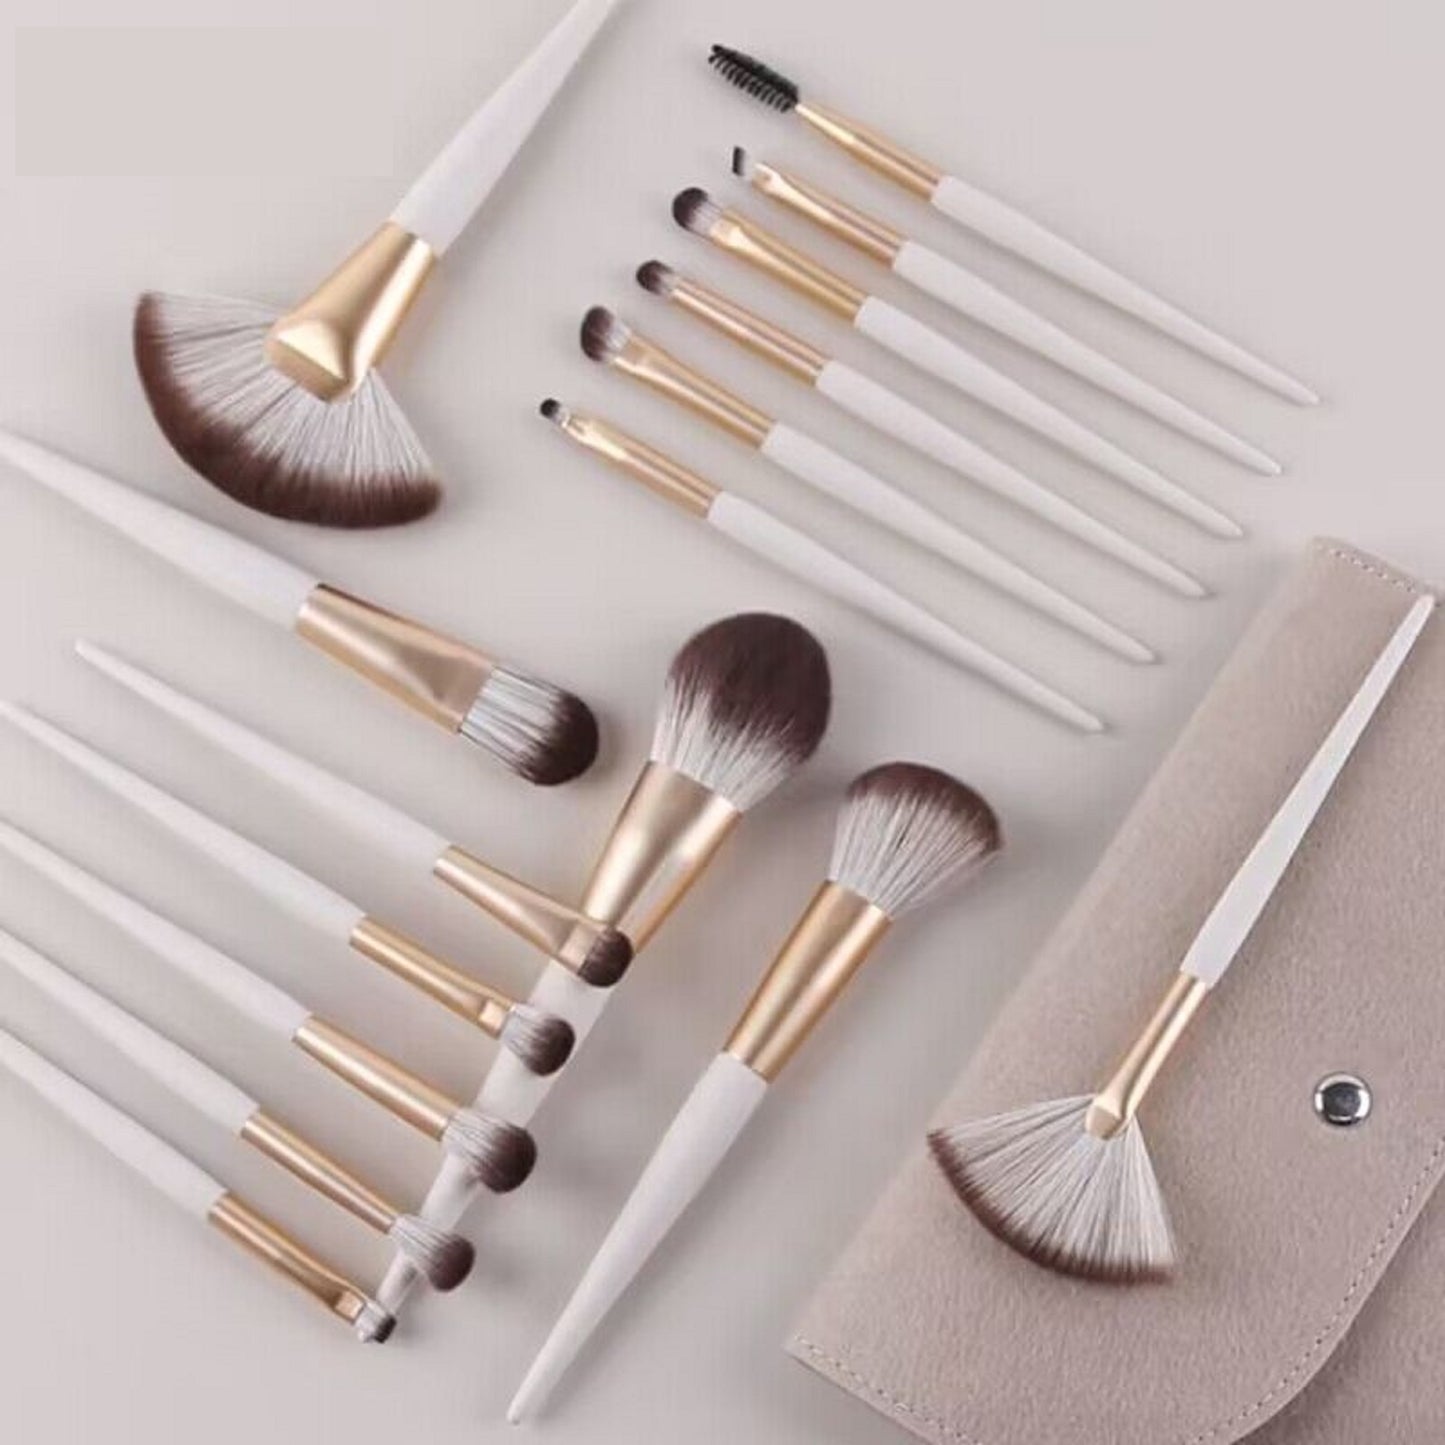 JIYUERLTD Luxe Makeup Brushes Collection - 16pcs Premium Makeup Brush Set Concealer Eye Shadow Blush Pack